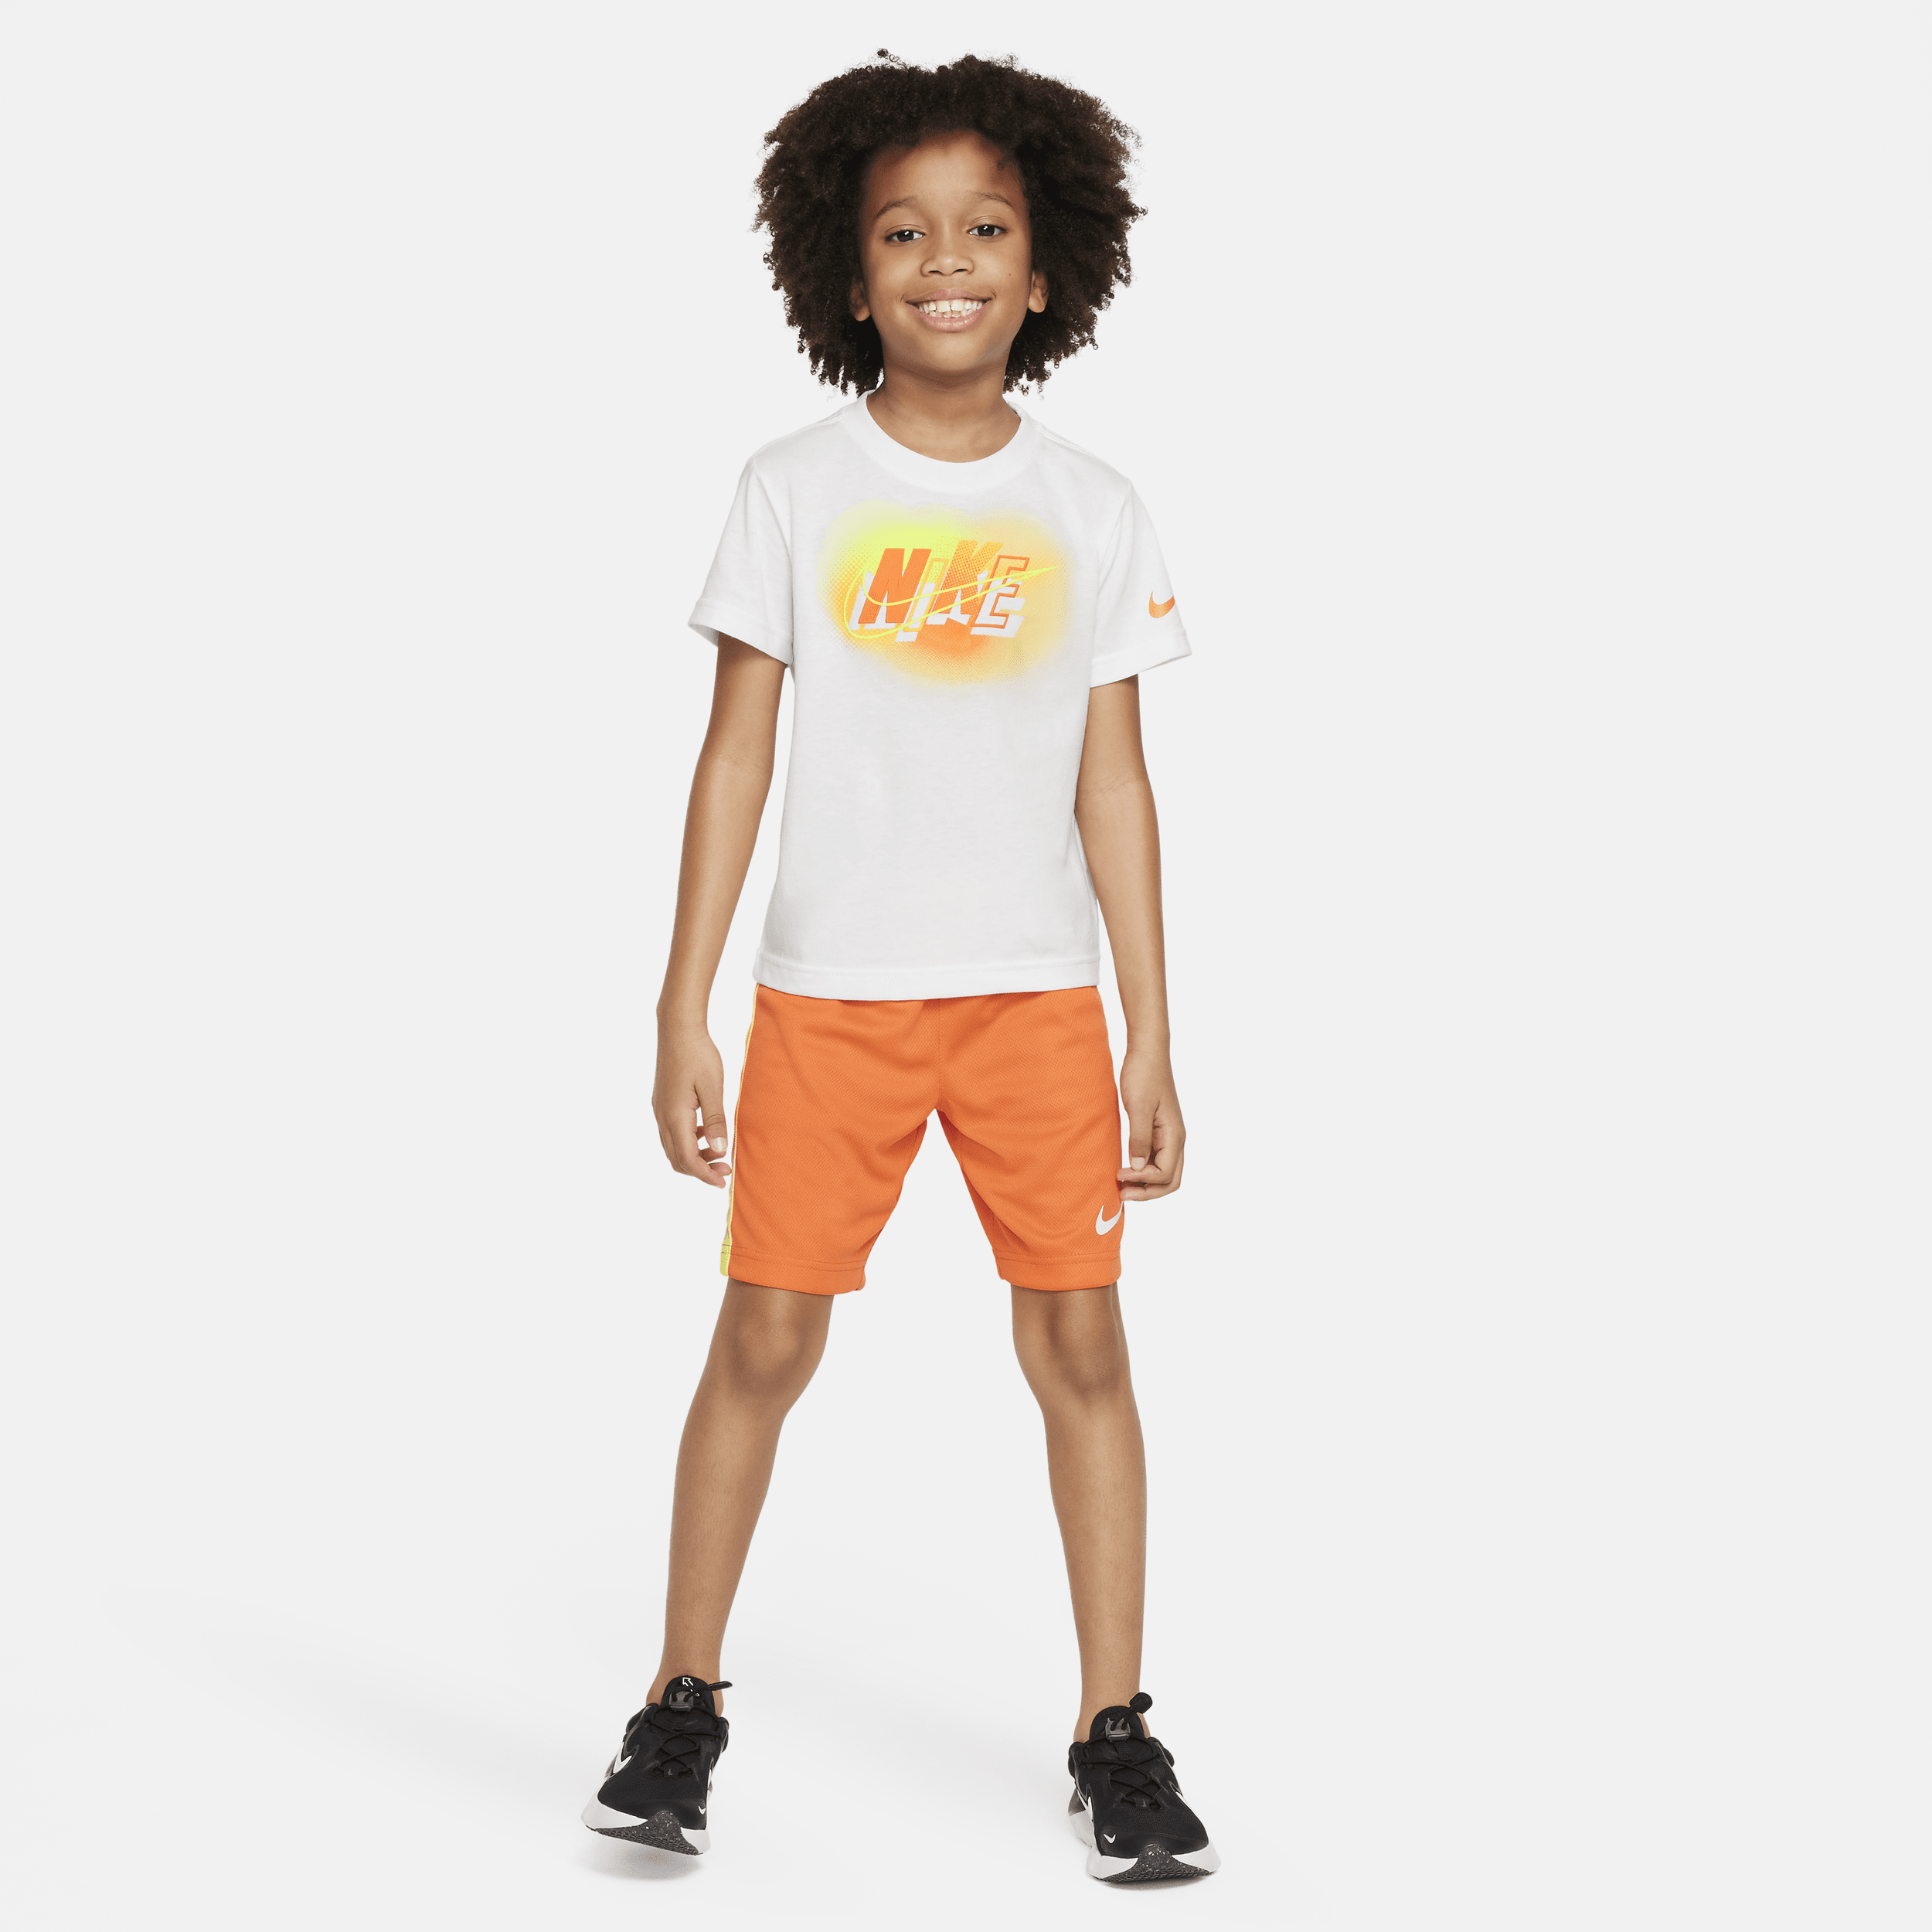 Completo con shorts Nike Hazy Rays – Bambino/a - Arancione